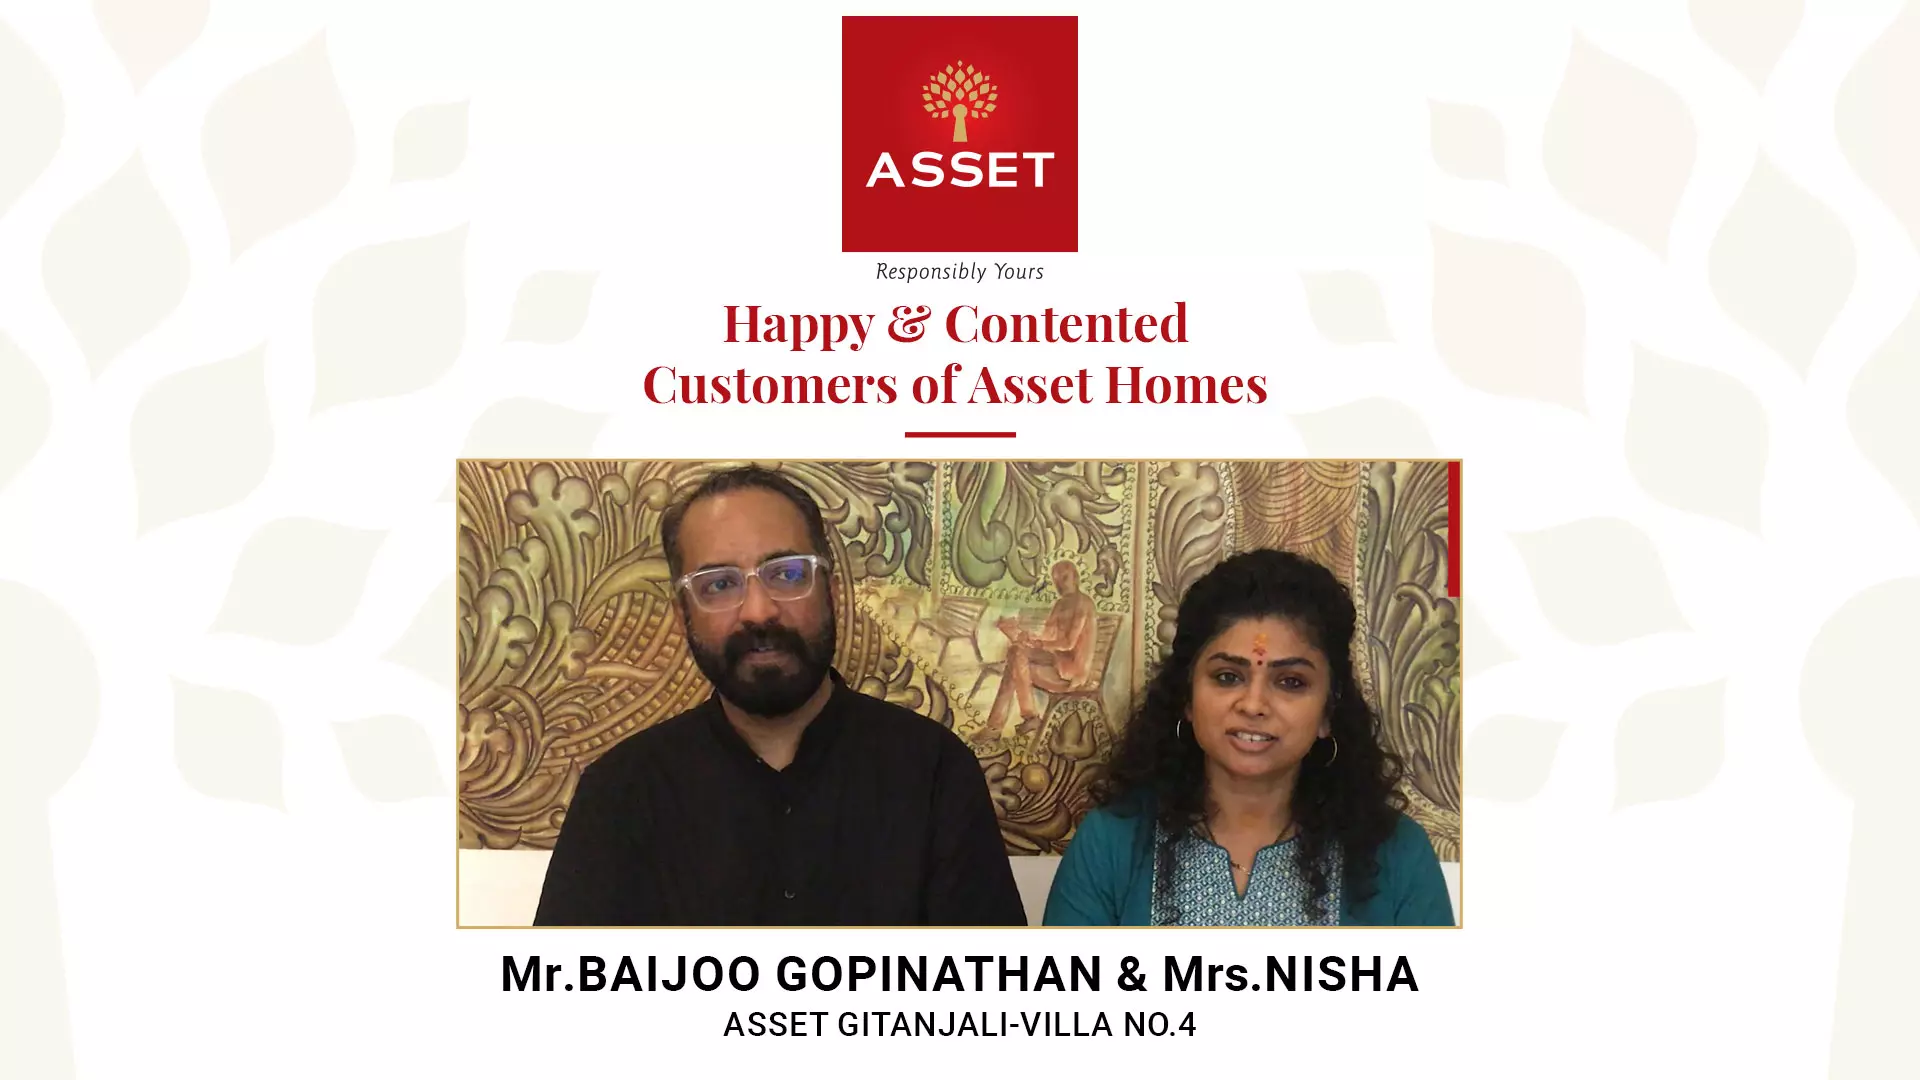 Mr. Baijoo Gopinathan & Mrs Nisha, Asset Gitanjali Villa No 4